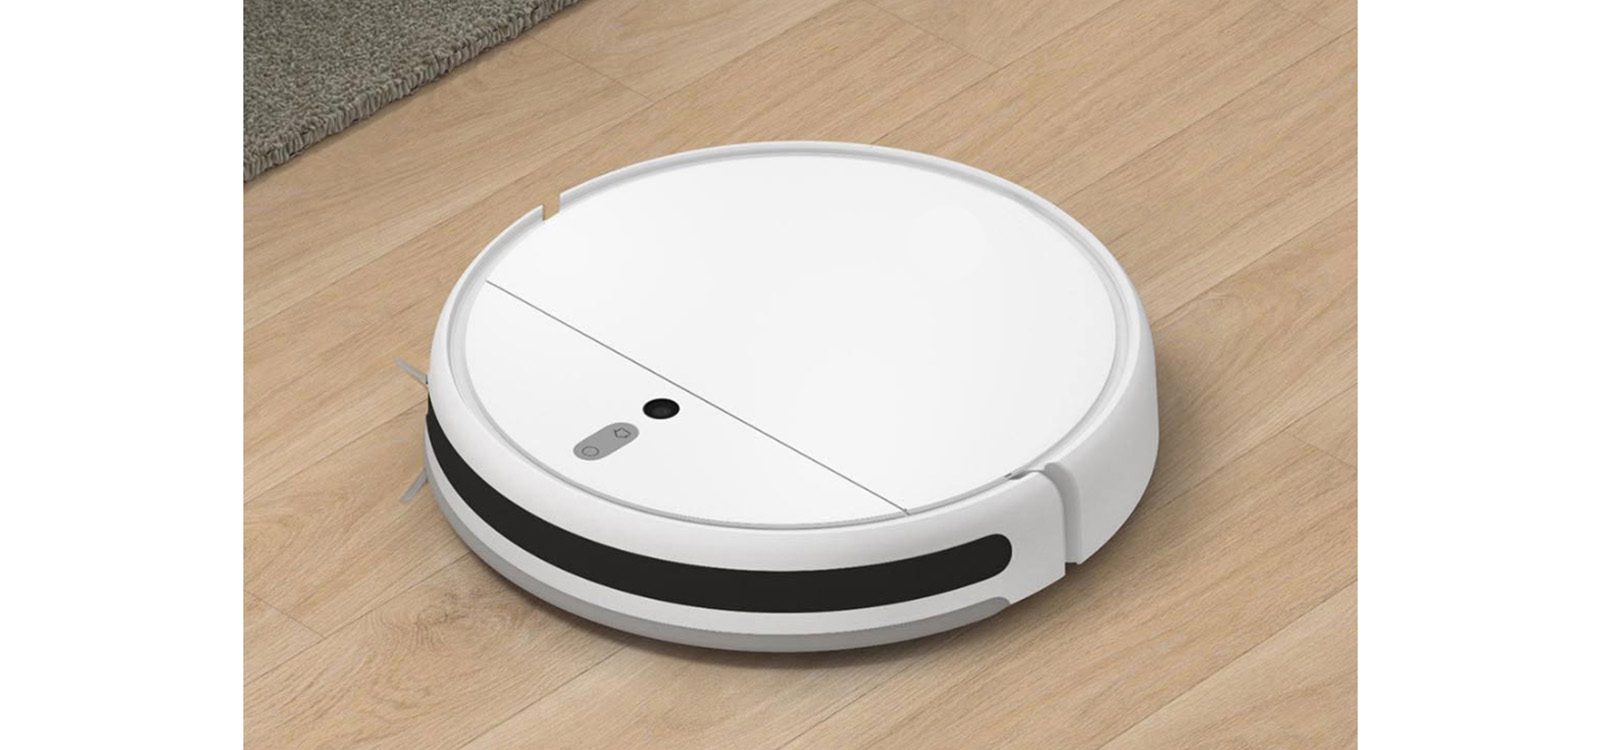 Mi Robot Vacuum Cleaner Левое Колесо Xiaomi